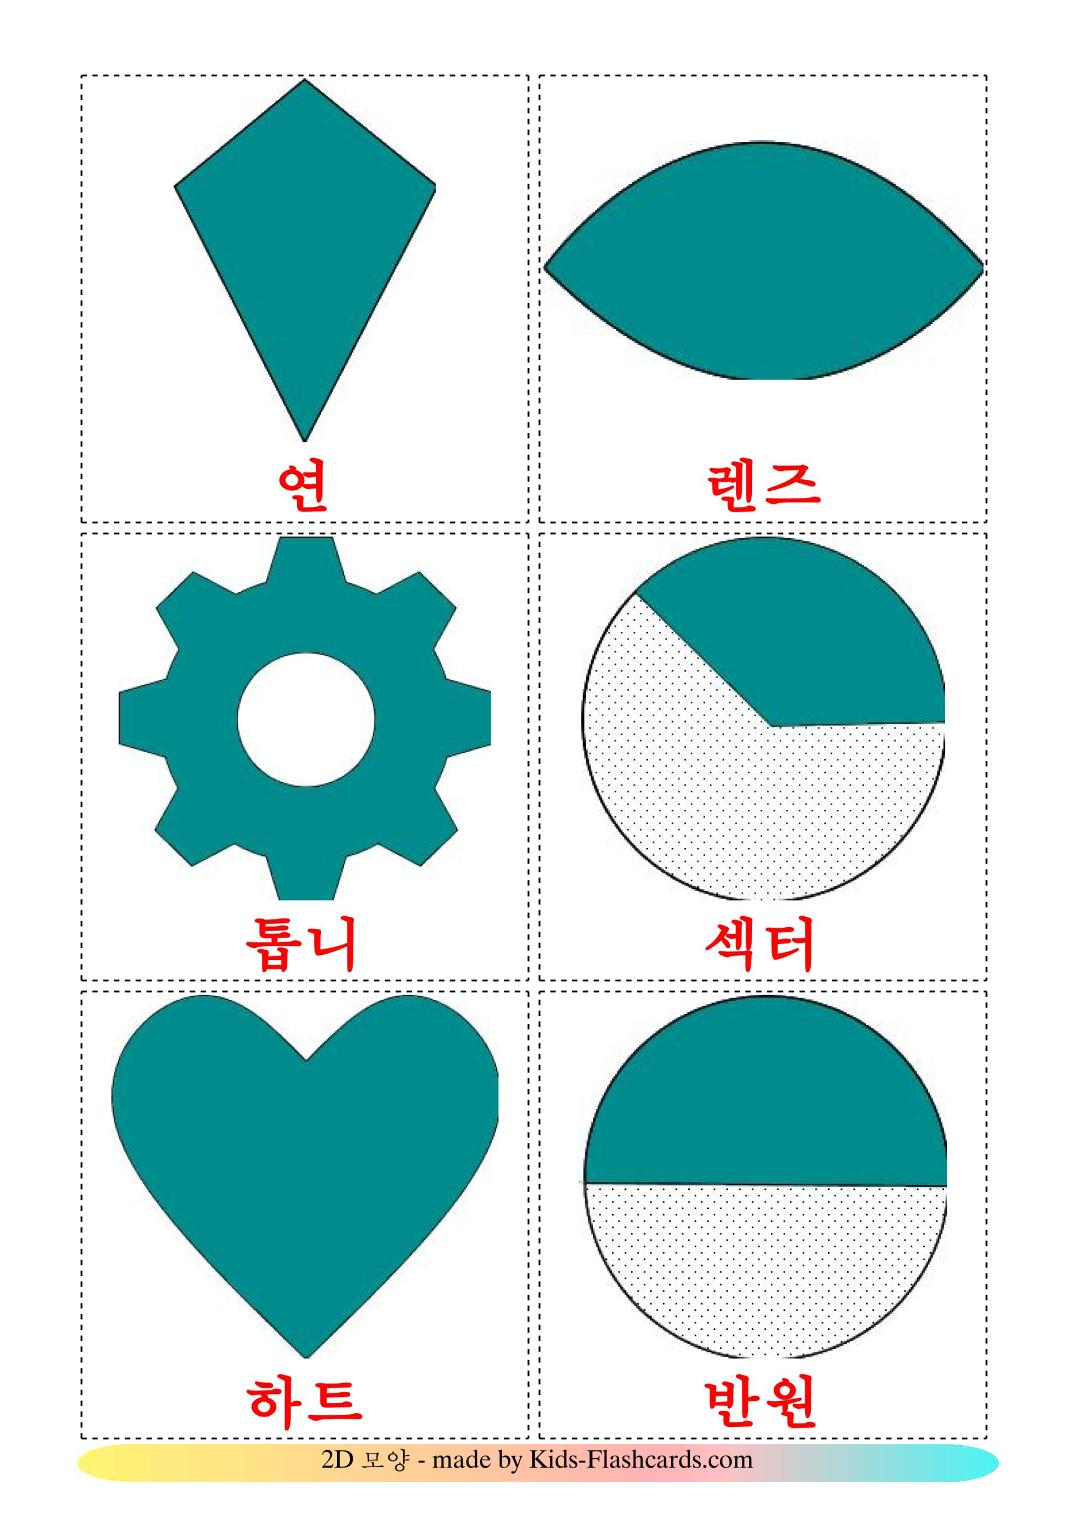 Formas 2D - 35 Flashcards coreanoes gratuitos para impressão